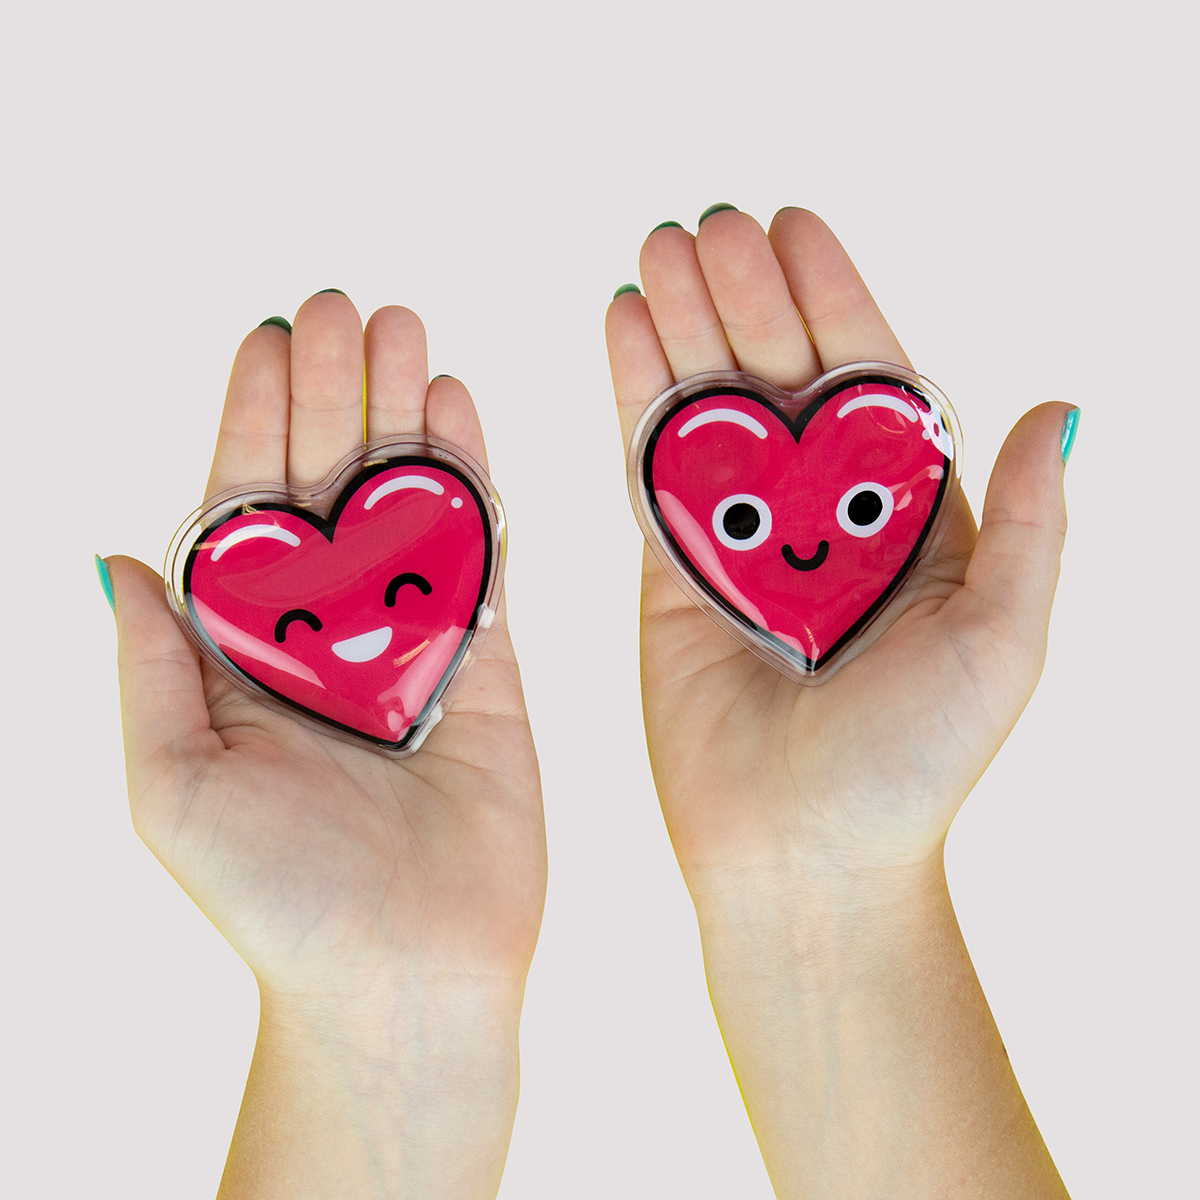 Heart Hand Warmers